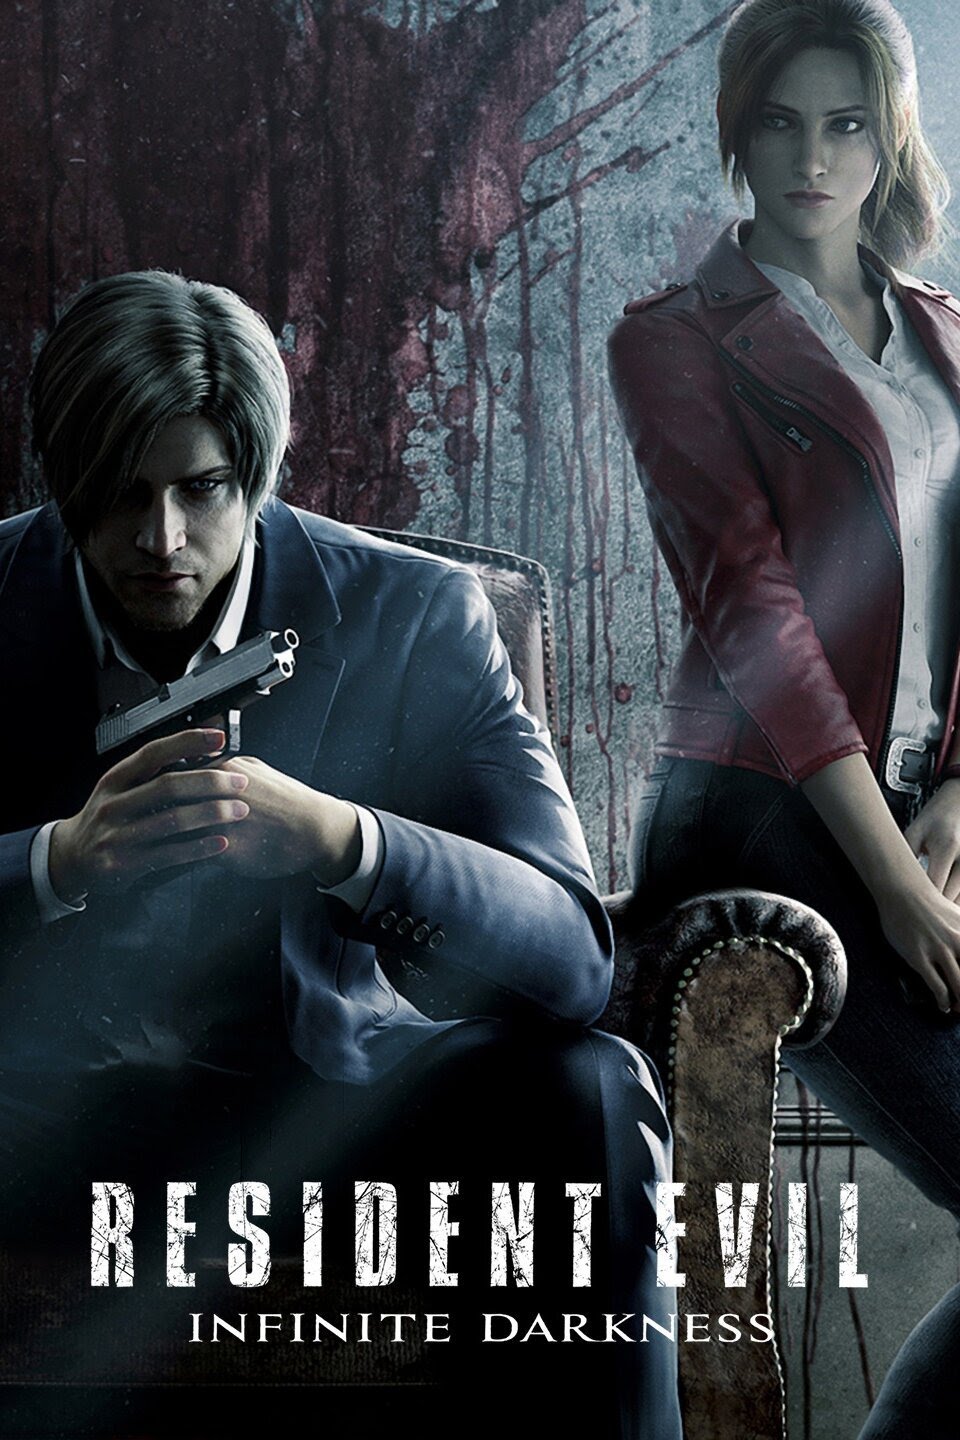 Resident Evil Infinite Darkness ผี ชีวะ มหันตภัยไวรัสมืด ตอนที่ 1-4 พากย์ไทย